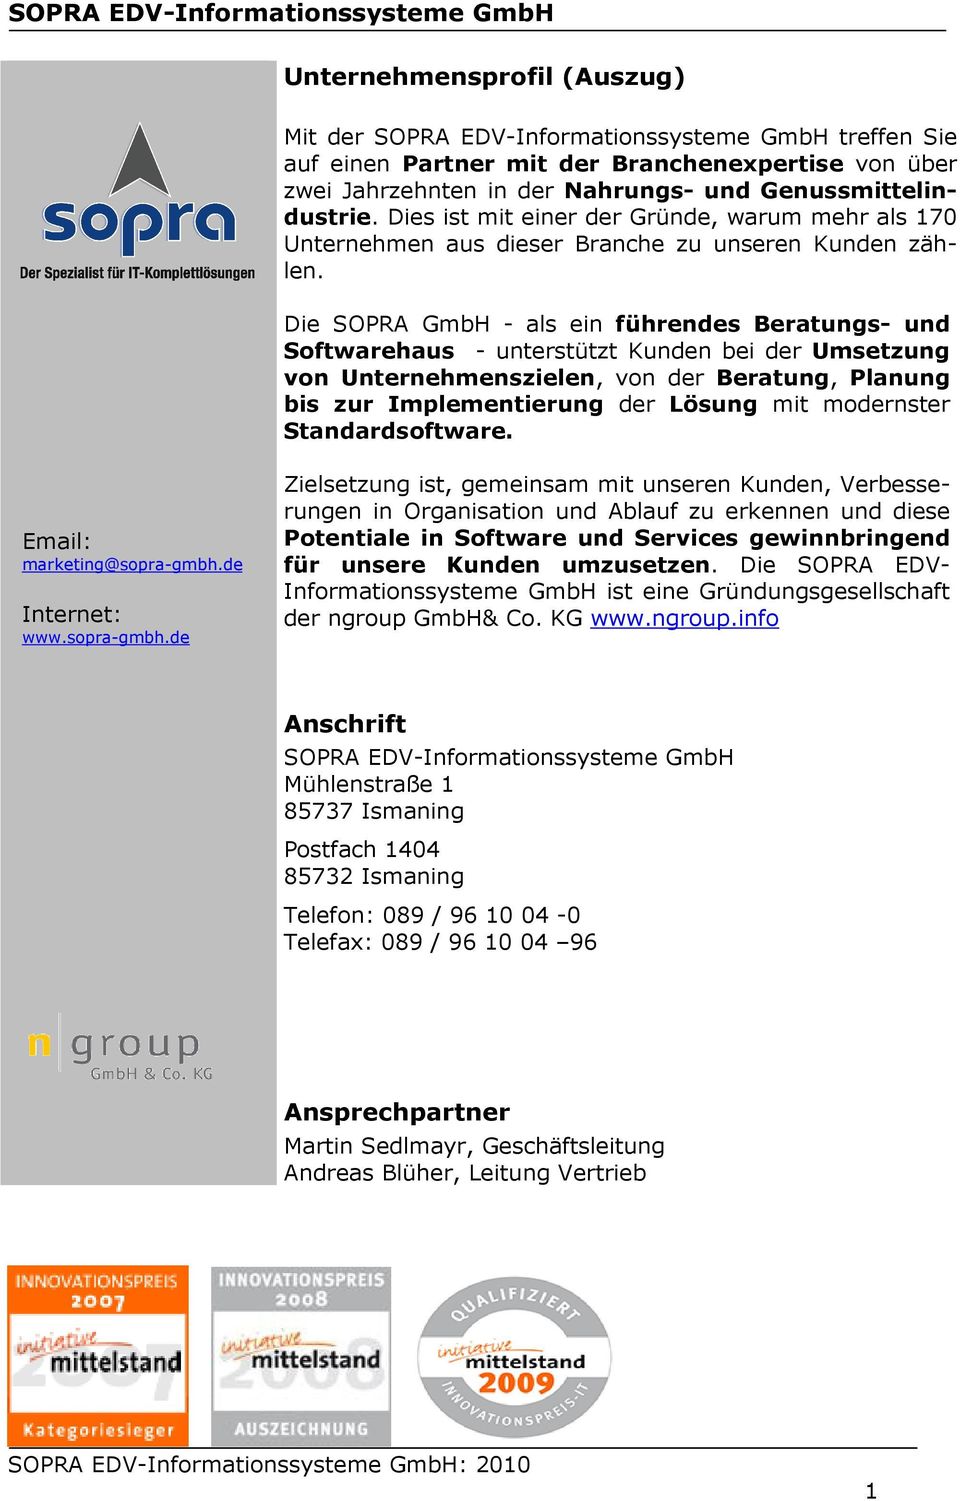 Die SOPRA GmbH - als ein führendes Beratungs- und Softwarehaus - unterstützt Kunden bei der Umsetzung von Unternehmenszielen, von der Beratung, Planung bis zur Implementierung der Lösung mit